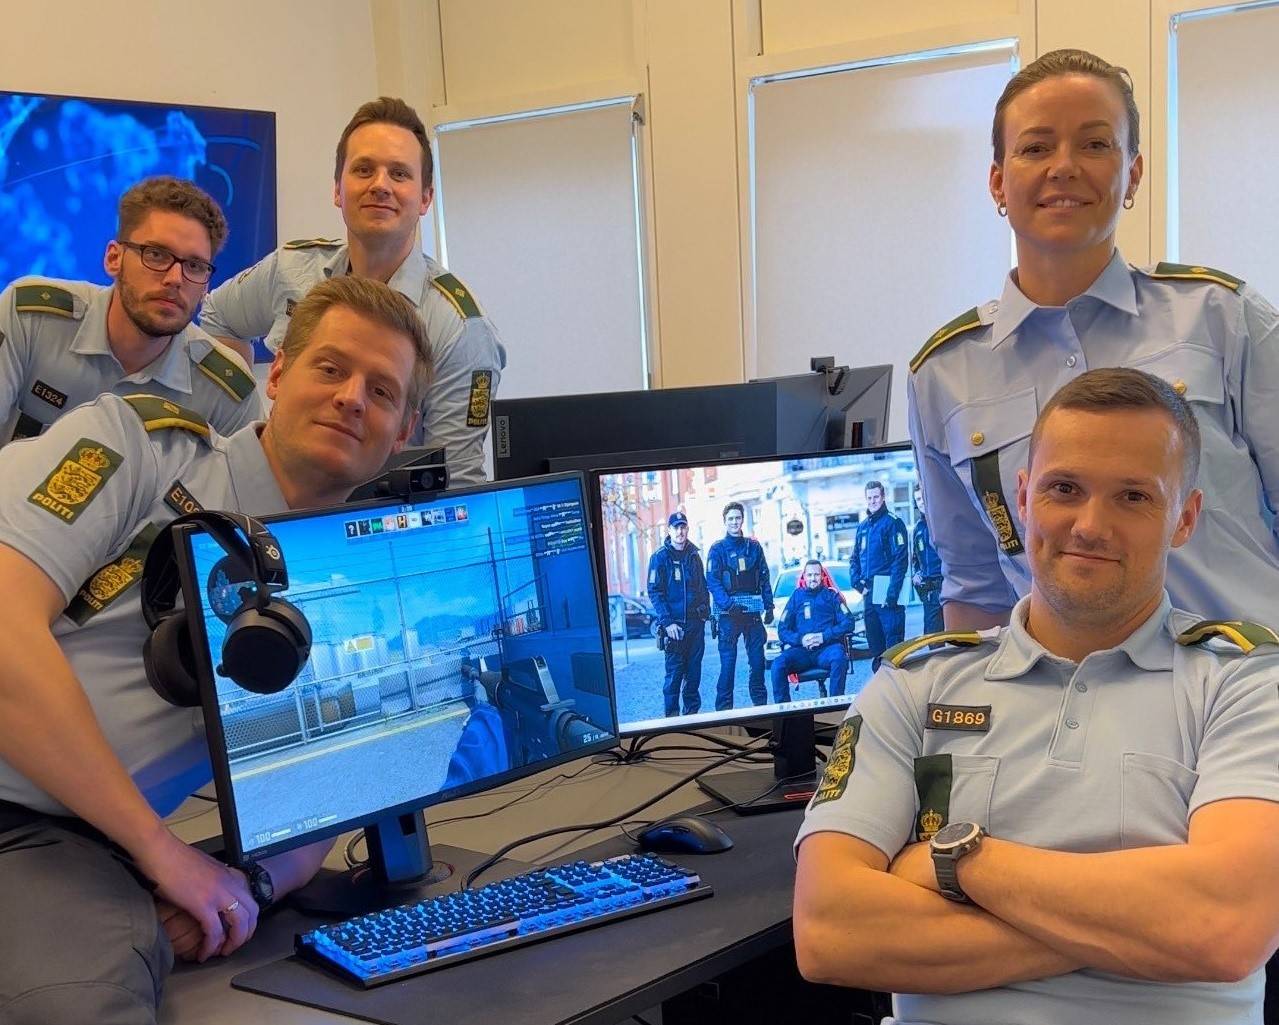 Police online patrol team